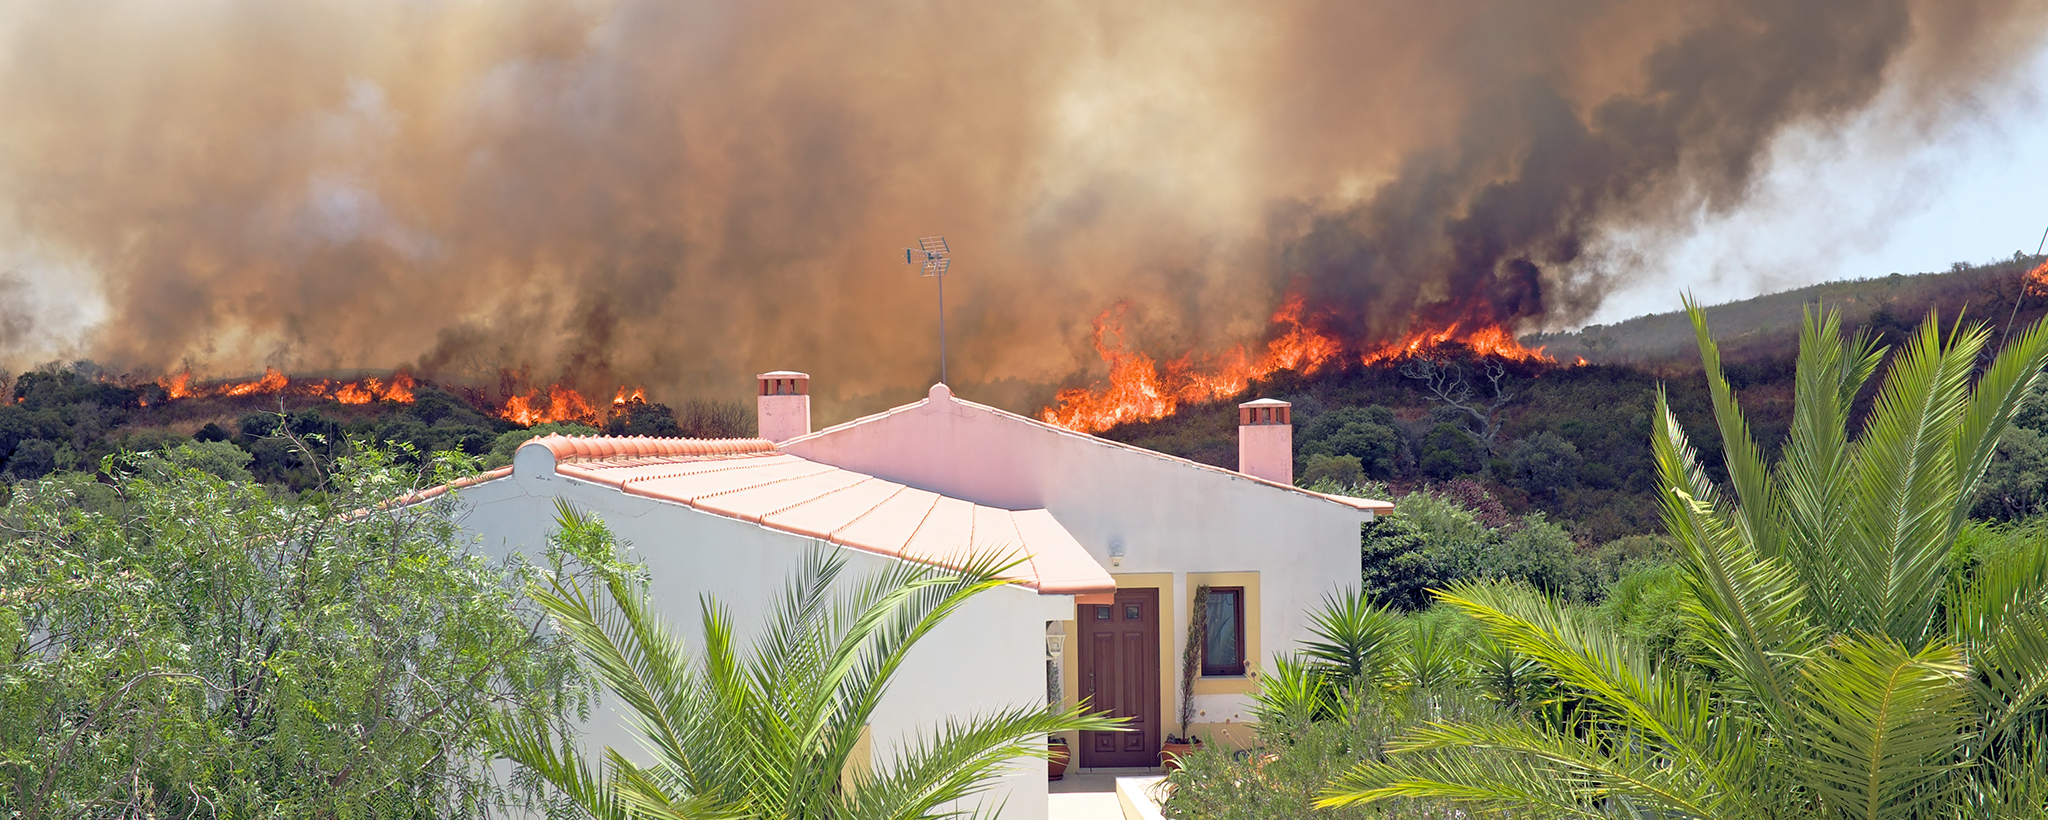 un incendio forestal arde cerca de una casa